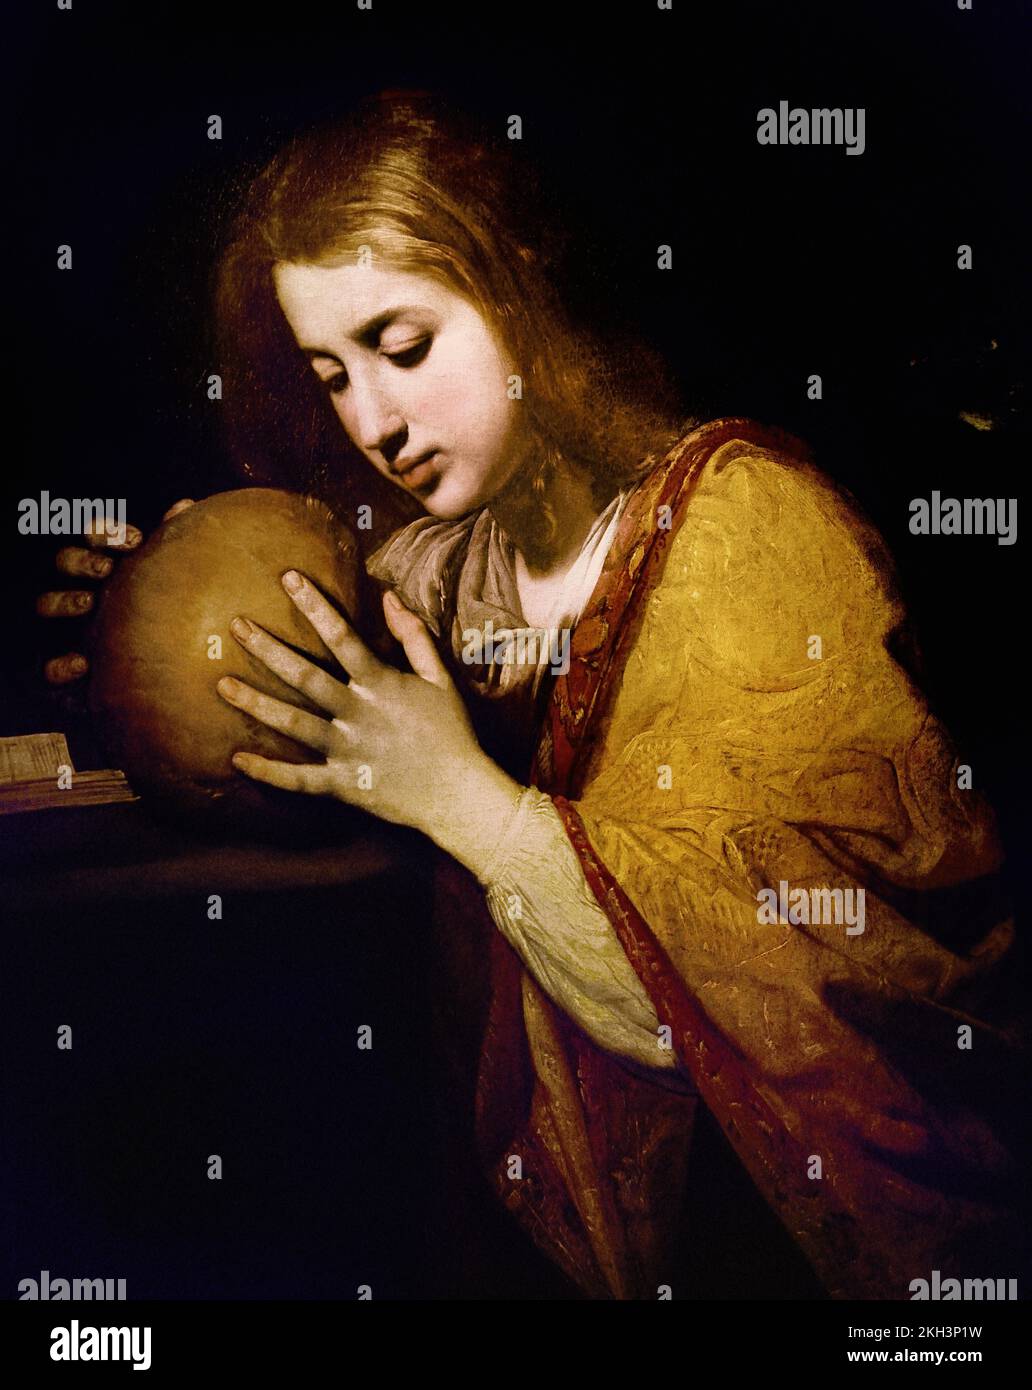 Mary Magdalene circa 1630 Massimo Stanzione (1586-1656) Jahrhundert, Italien, Italienisch, Maler, St. Maria Magdalena, Jüngerin Jesu. Laut den Berichten des Evangeliums hat Jesus sie von sieben Dämonen befreit, sie hat ihm in Galiläa finanziell geholfen. Sie war Zeugin der Kreuzigung und der Beerdigung Jesu und, bekanntermaßen, war sie die erste Person, die ihn nach der Auferstehung sah. Stockfoto